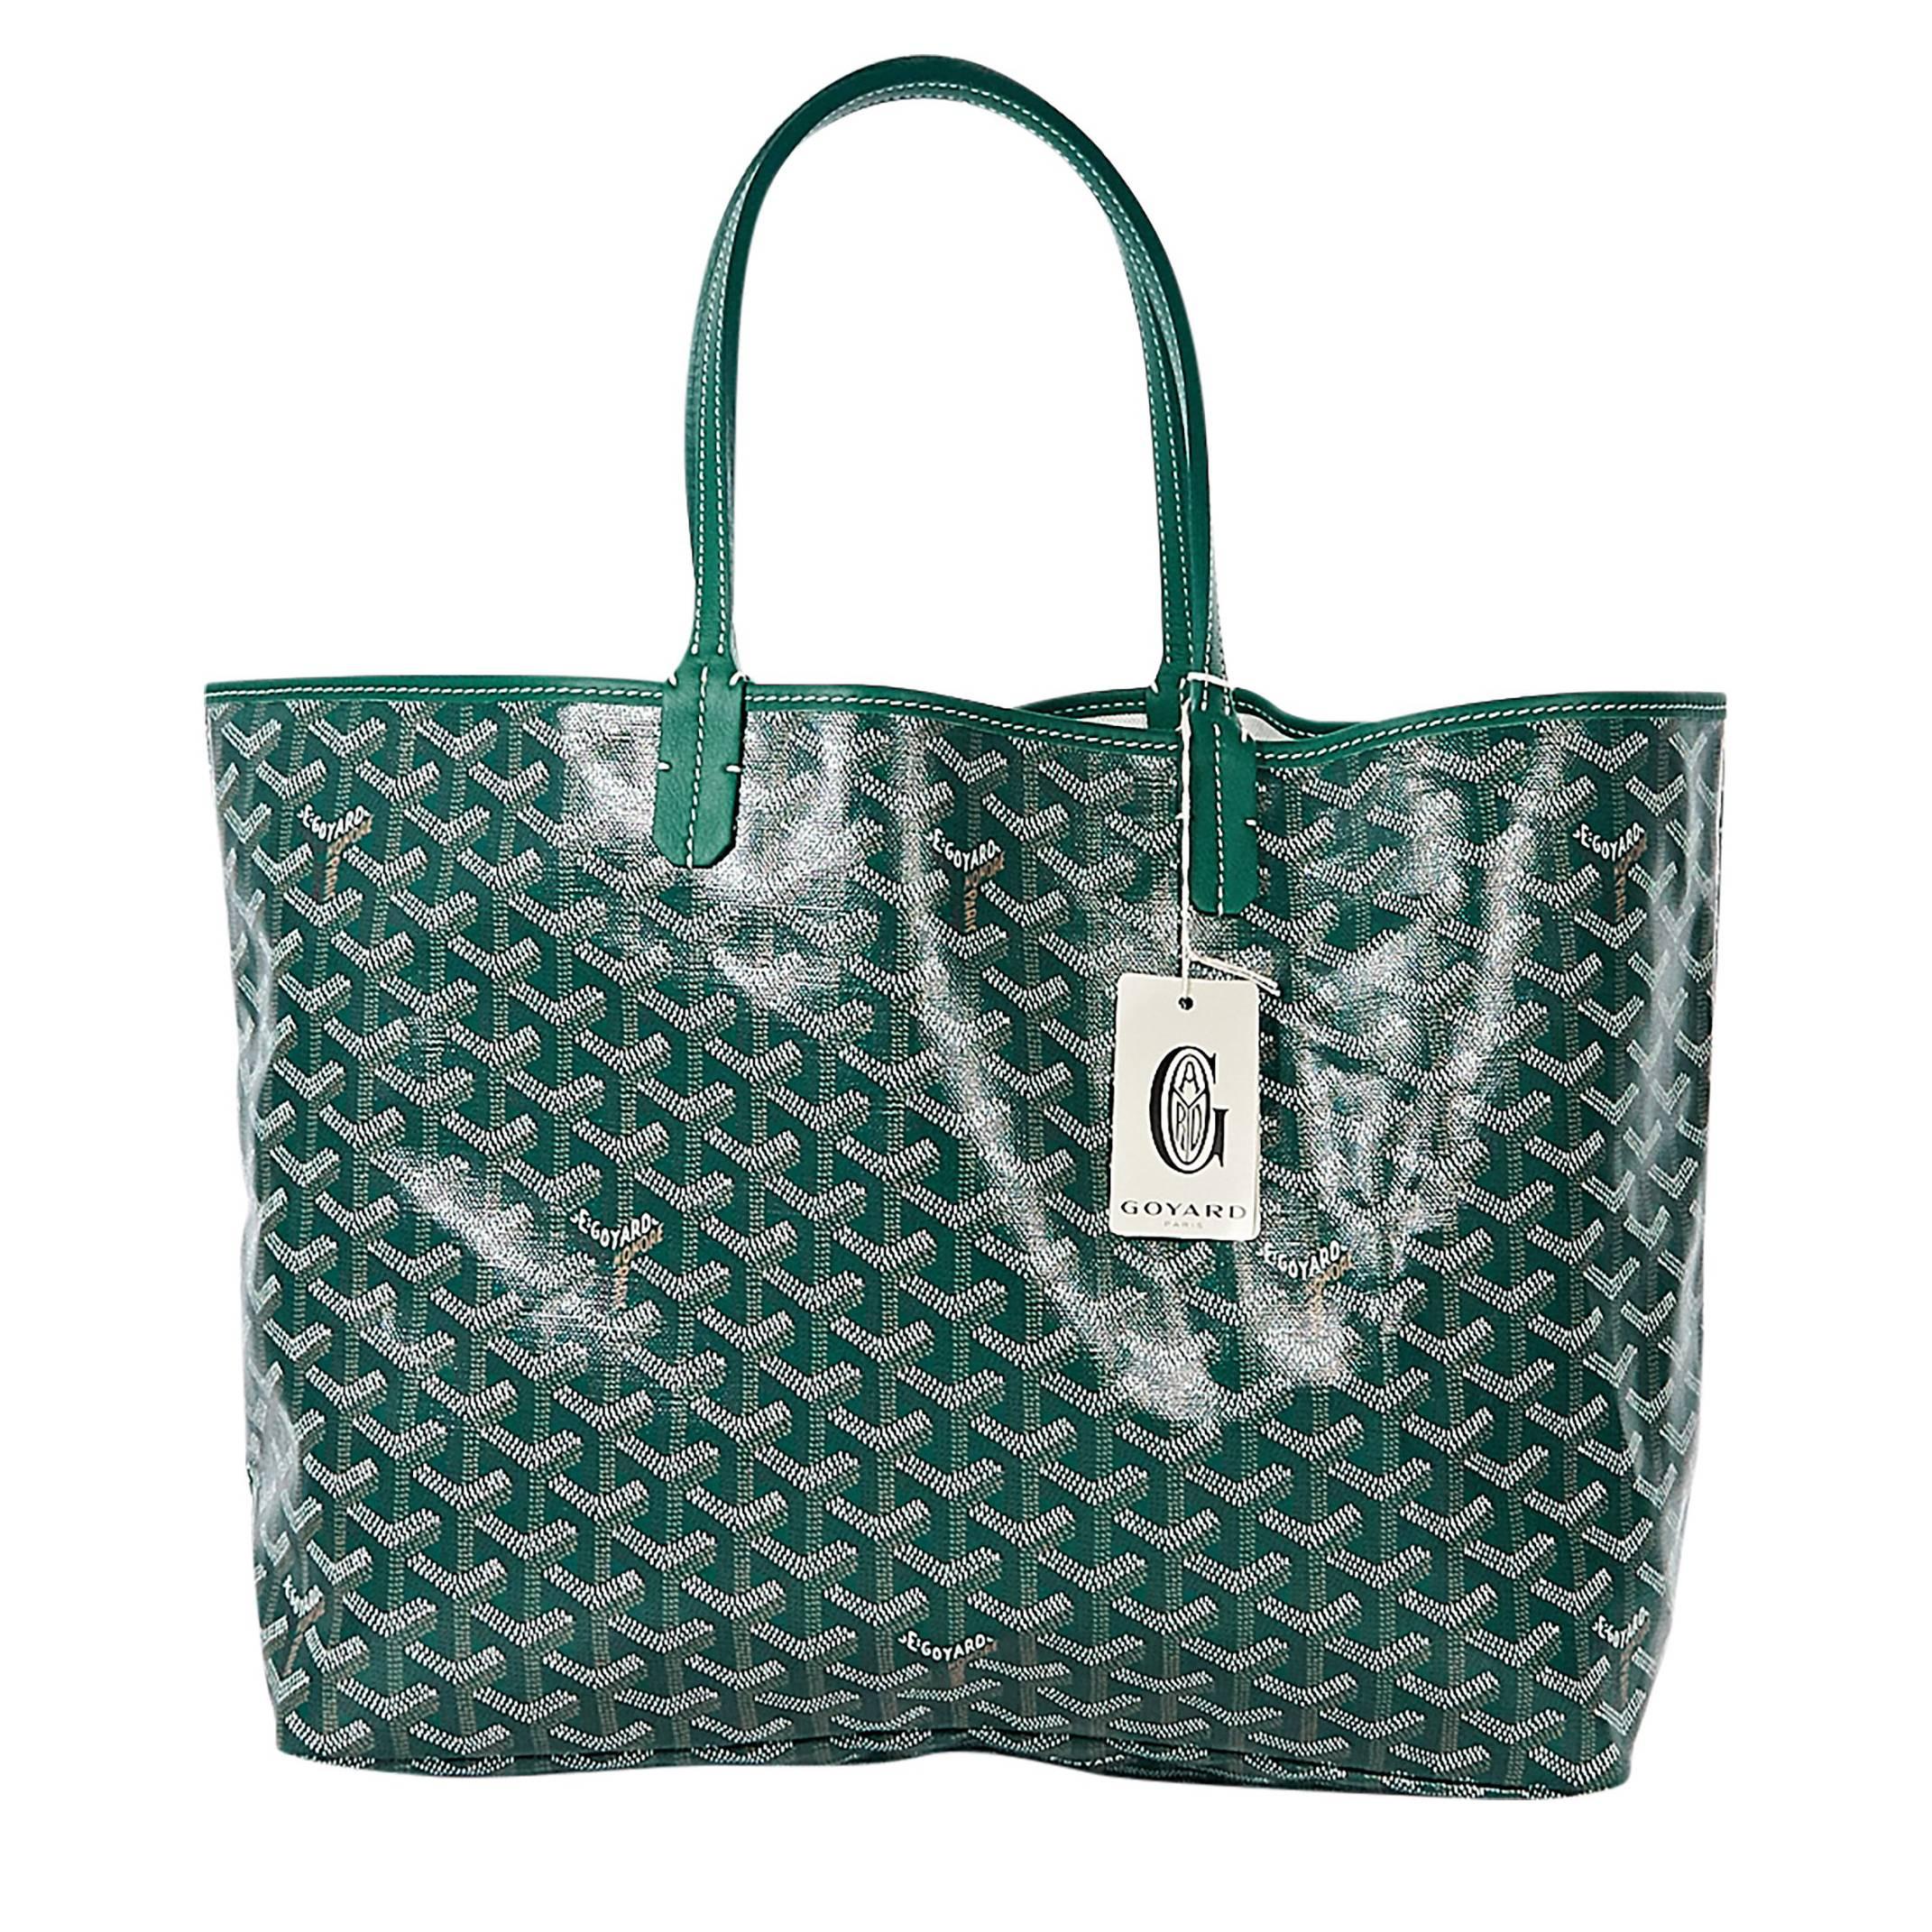 Goyard Women's Tote Bags - Bags